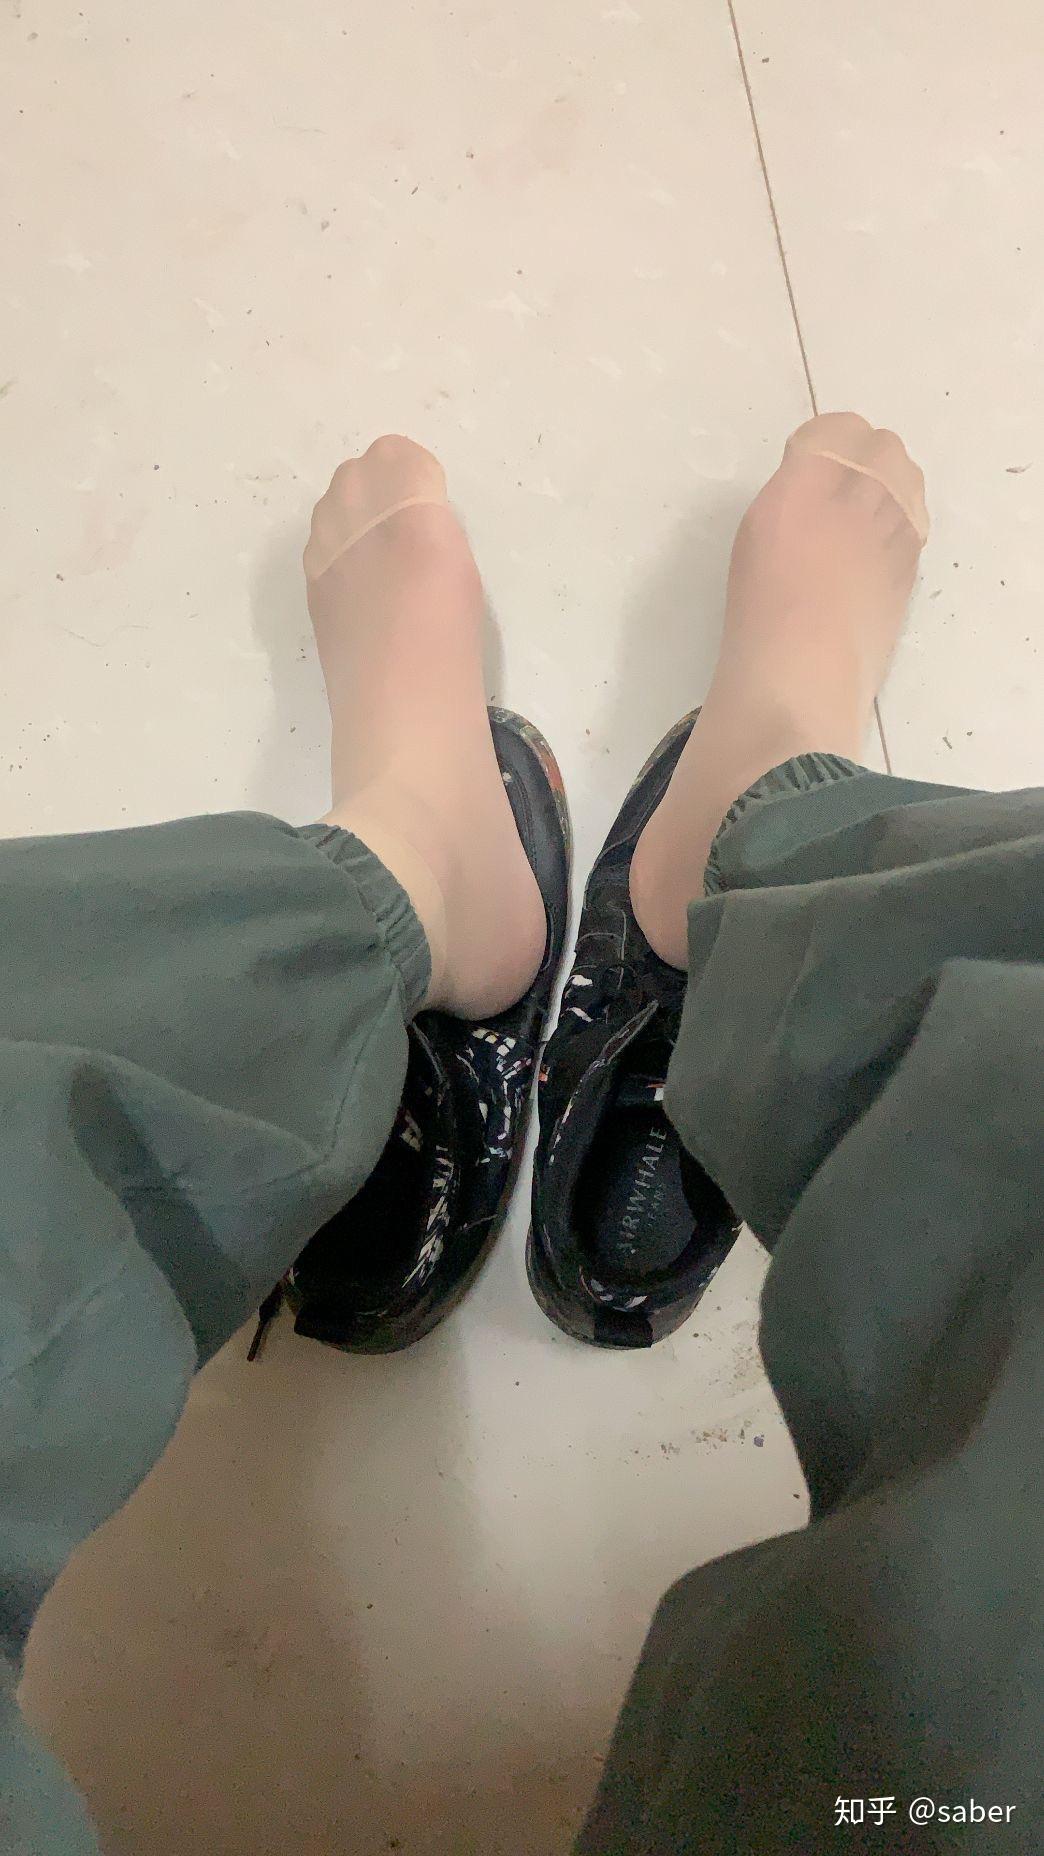 (丝袜)熟妇脱掉黑色冬靴露超薄原味性感的丝袜美脚,脚底太诱惑了!29张 – abcjp原创